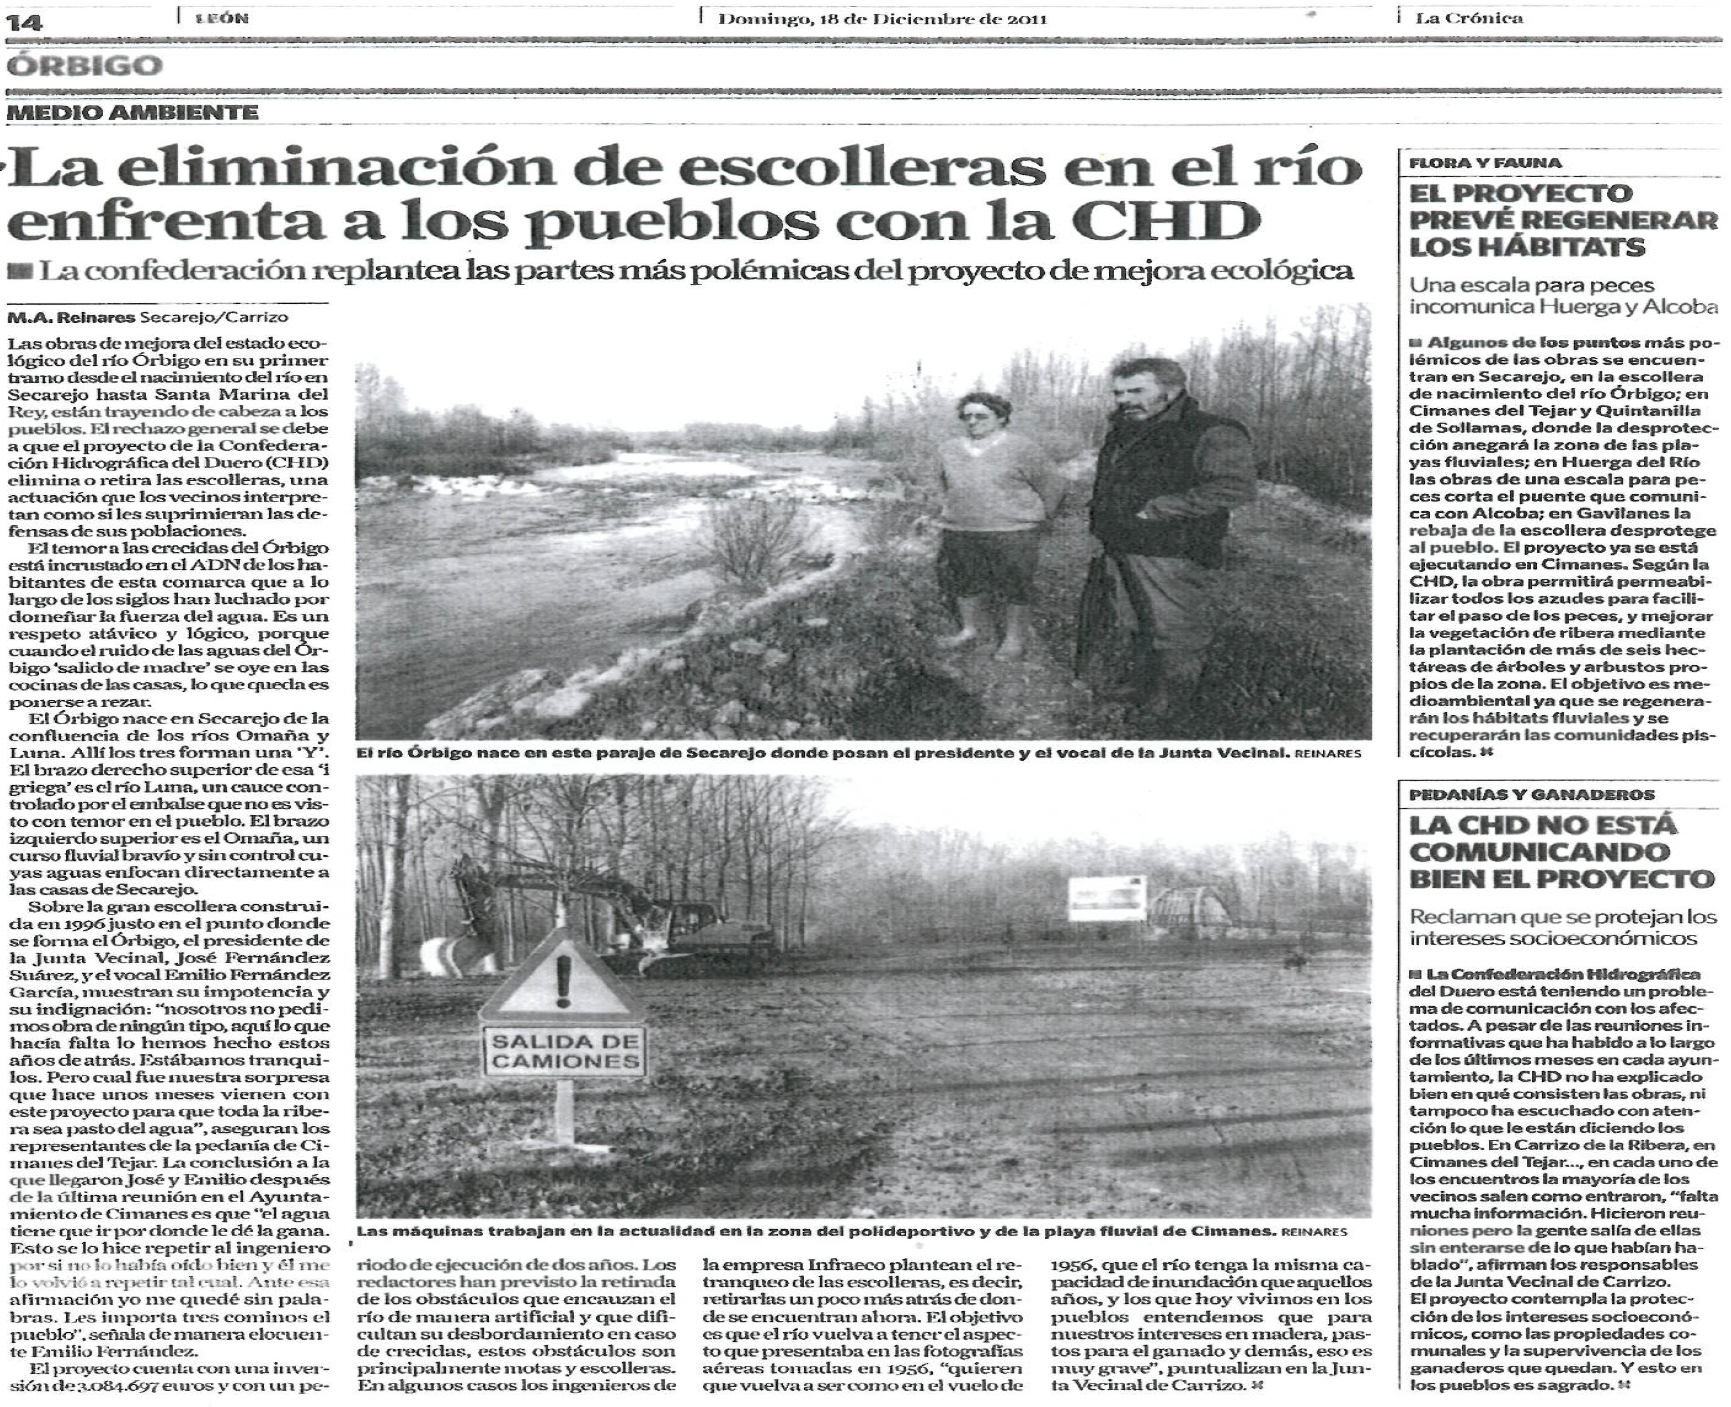 Ejemplos de medidas Prevención Proyecto de restauración del Rio Órbigo (León) I like to congratulate you, once more with the great success of the 1st Iberian River Restoration Conference.